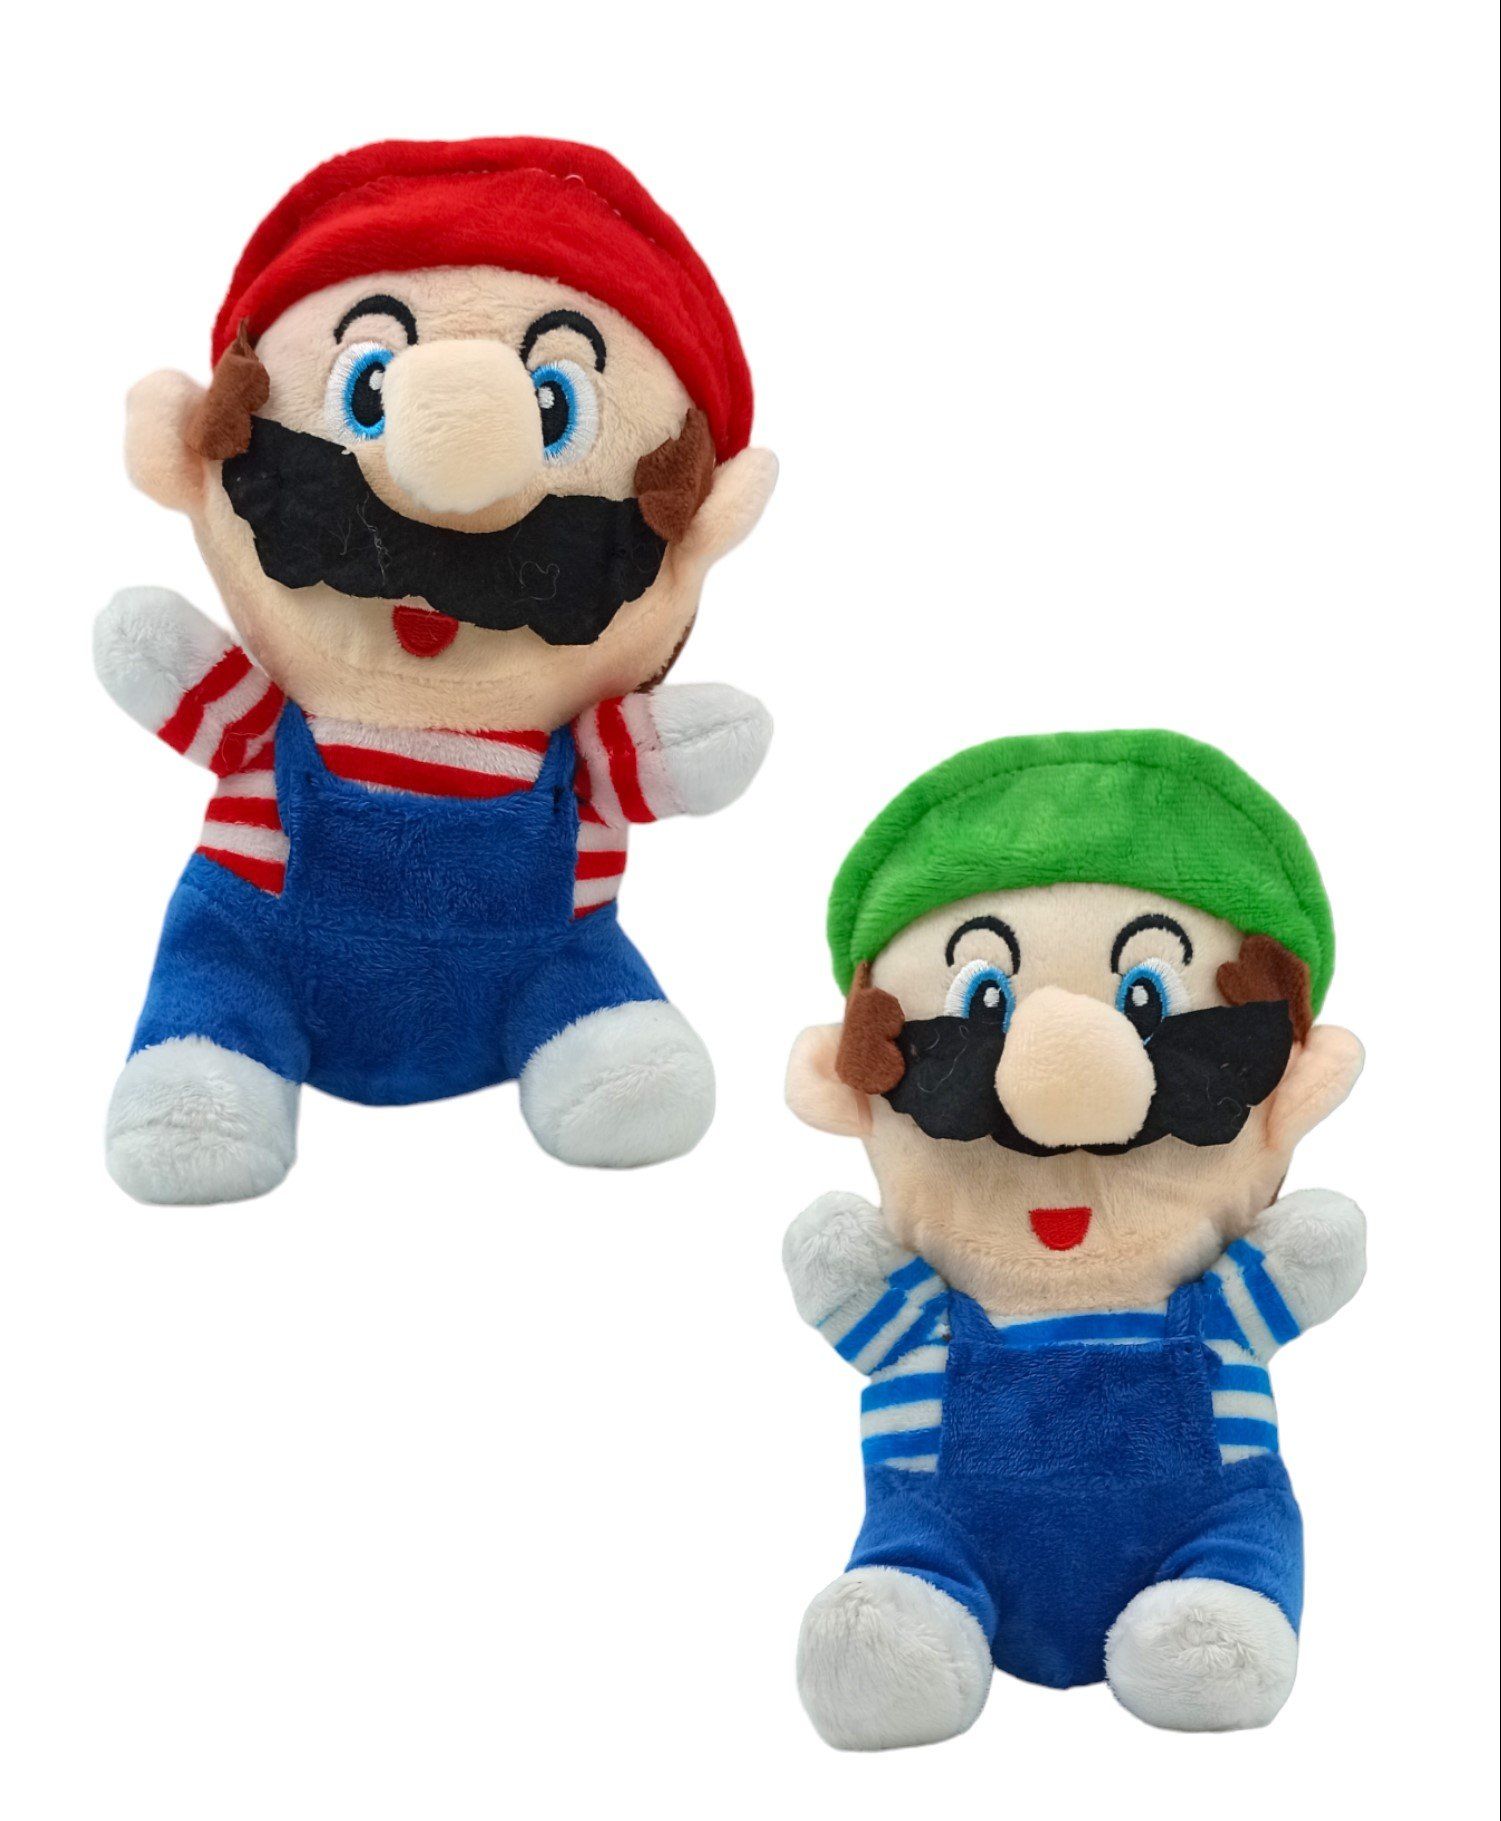 Süper Mario Oyuncakları Peluş Süper Mario ve Luigi Karakterleri 2 Karakter Bir Arada 20cm.